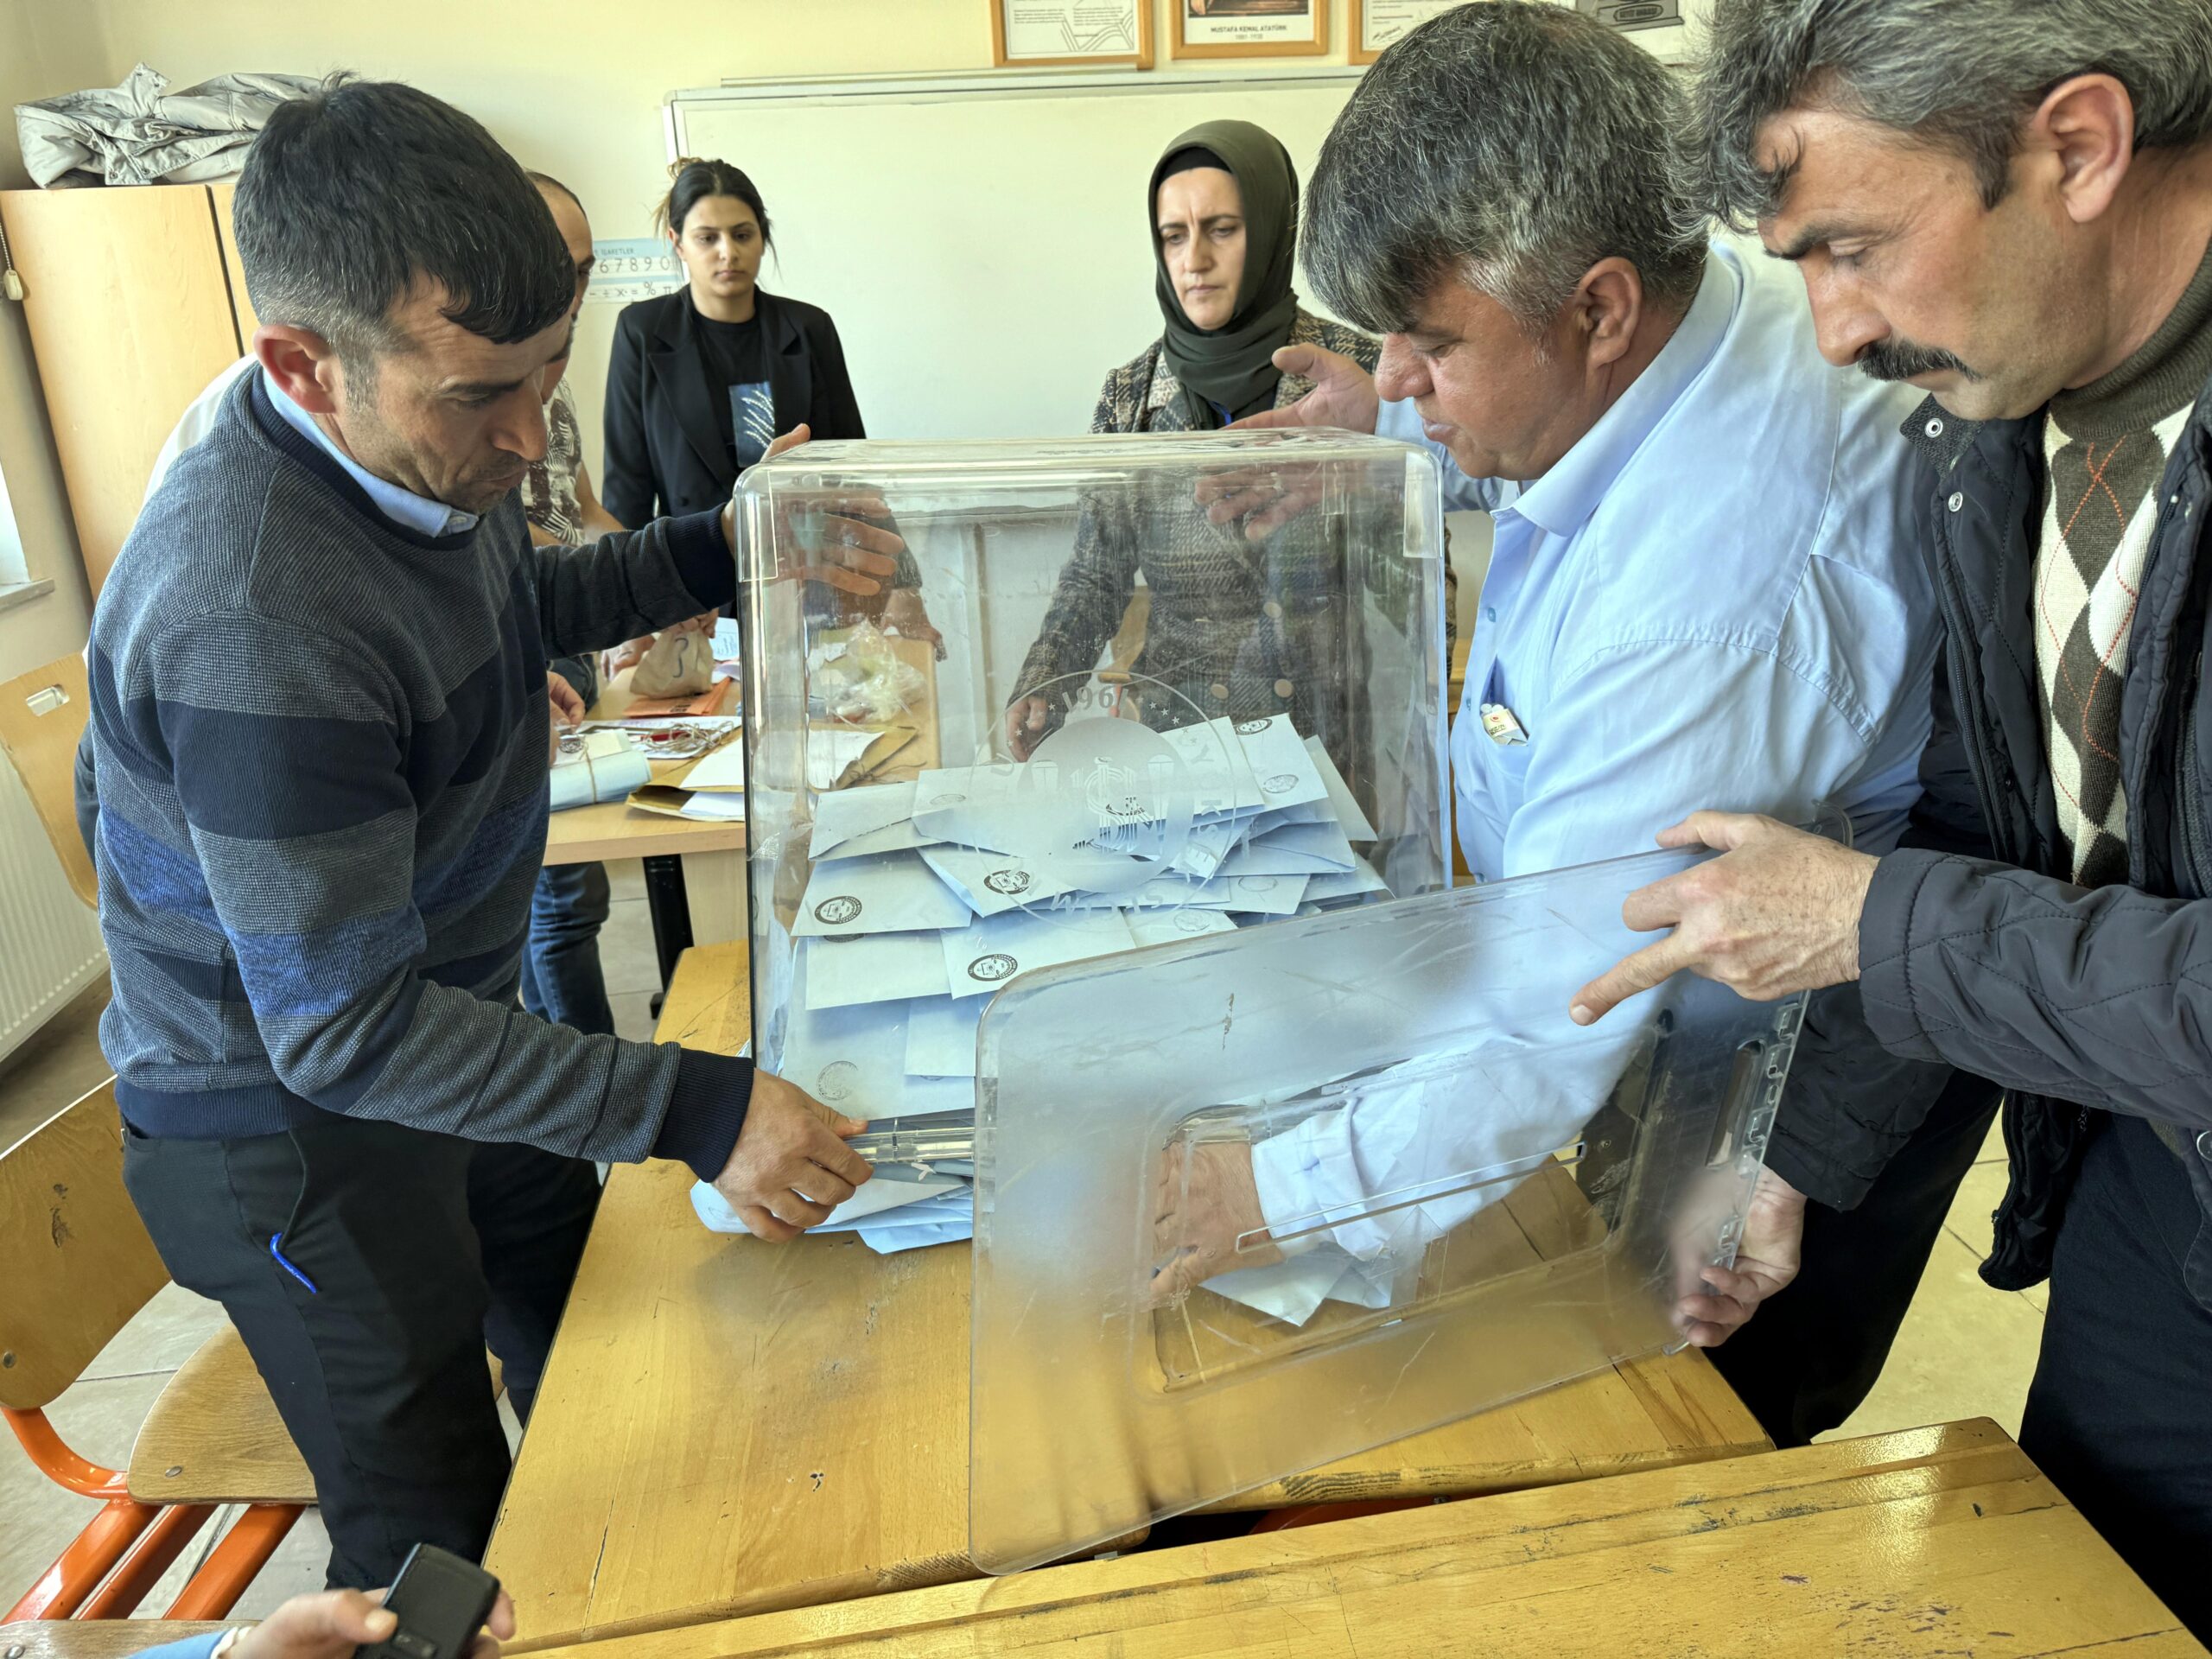 Türkiye’de yerel seçim için oy verme işlemi sona erdi, sayım işlemi sürüyor – BRTK